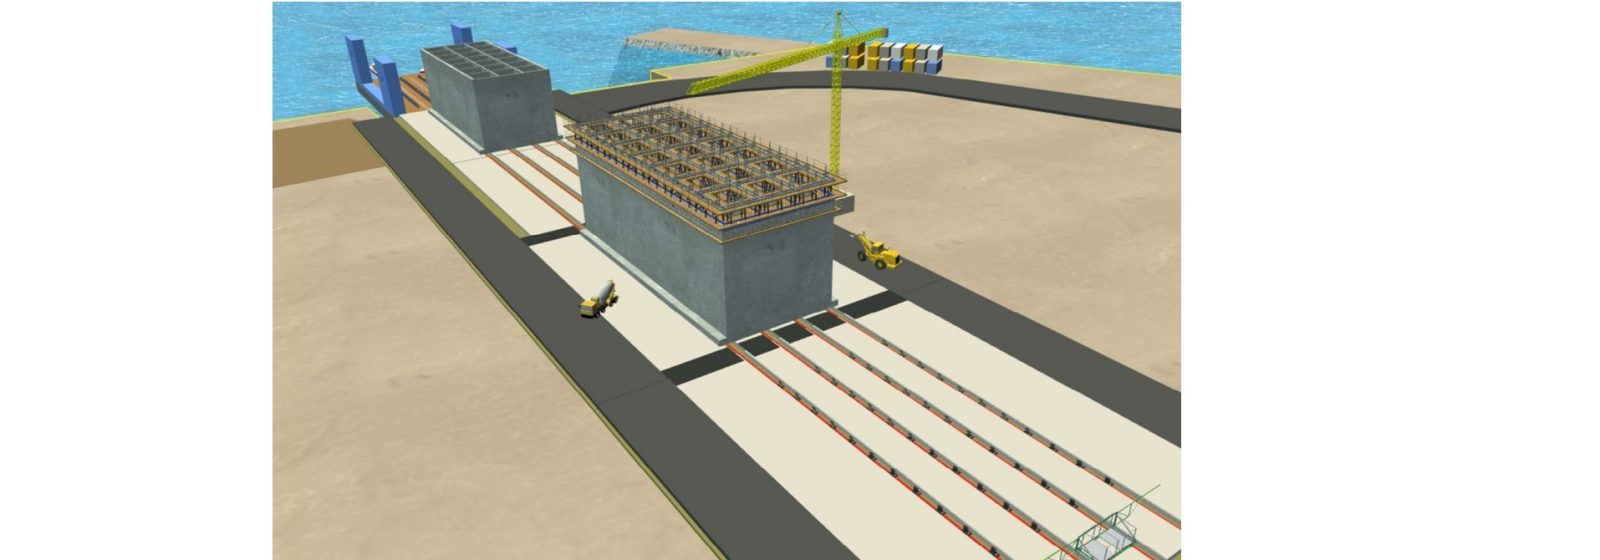 Impressie bouw betonnen caissons energie-eiland